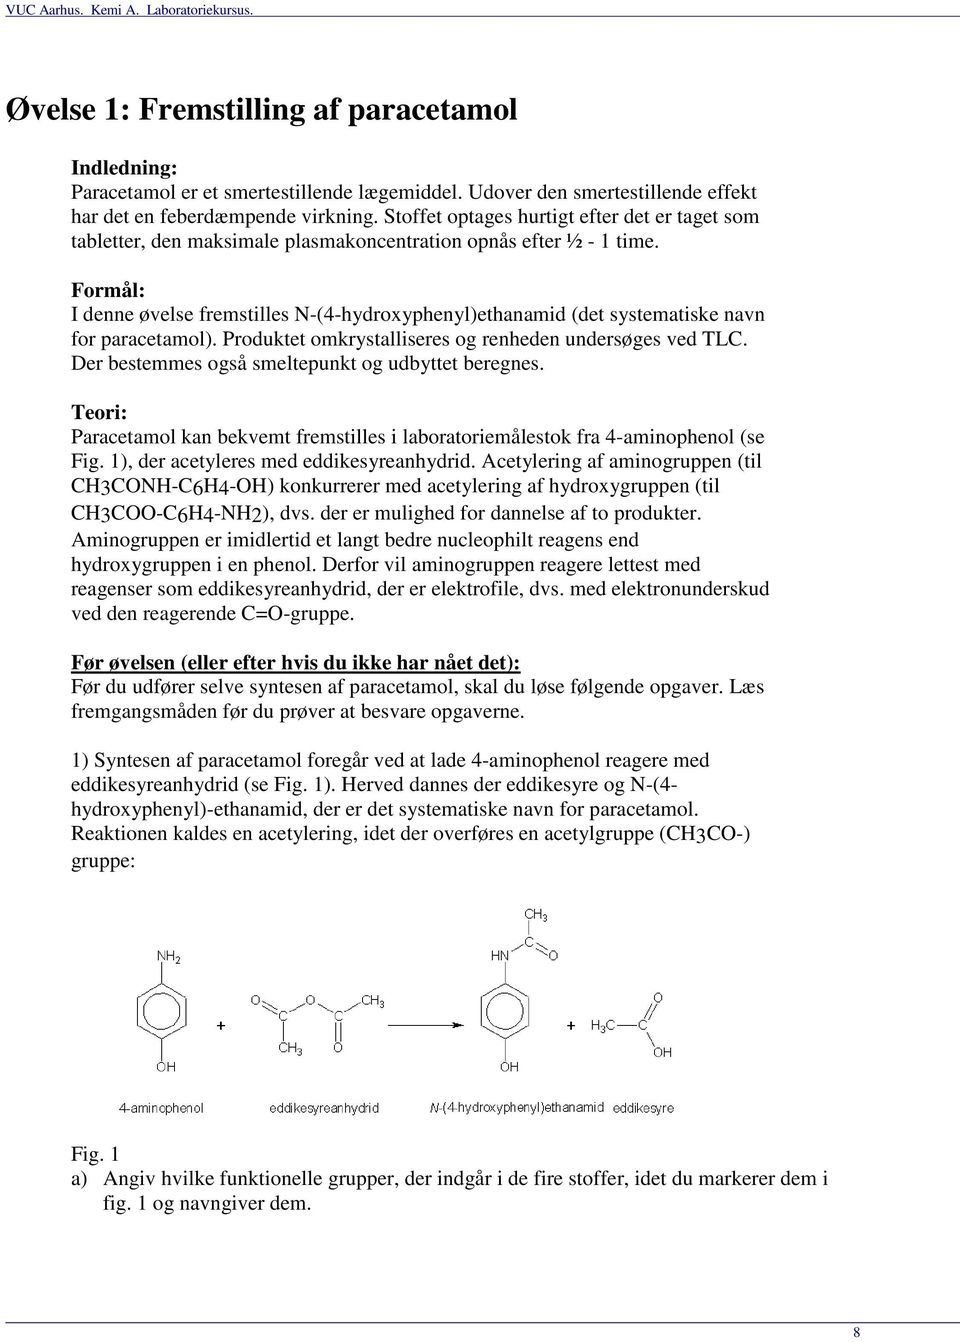 Formål: I denne øvelse fremstilles N-(4-hydroxyphenyl)ethanamid (det systematiske navn for paracetamol). Produktet omkrystalliseres og renheden undersøges ved TLC.